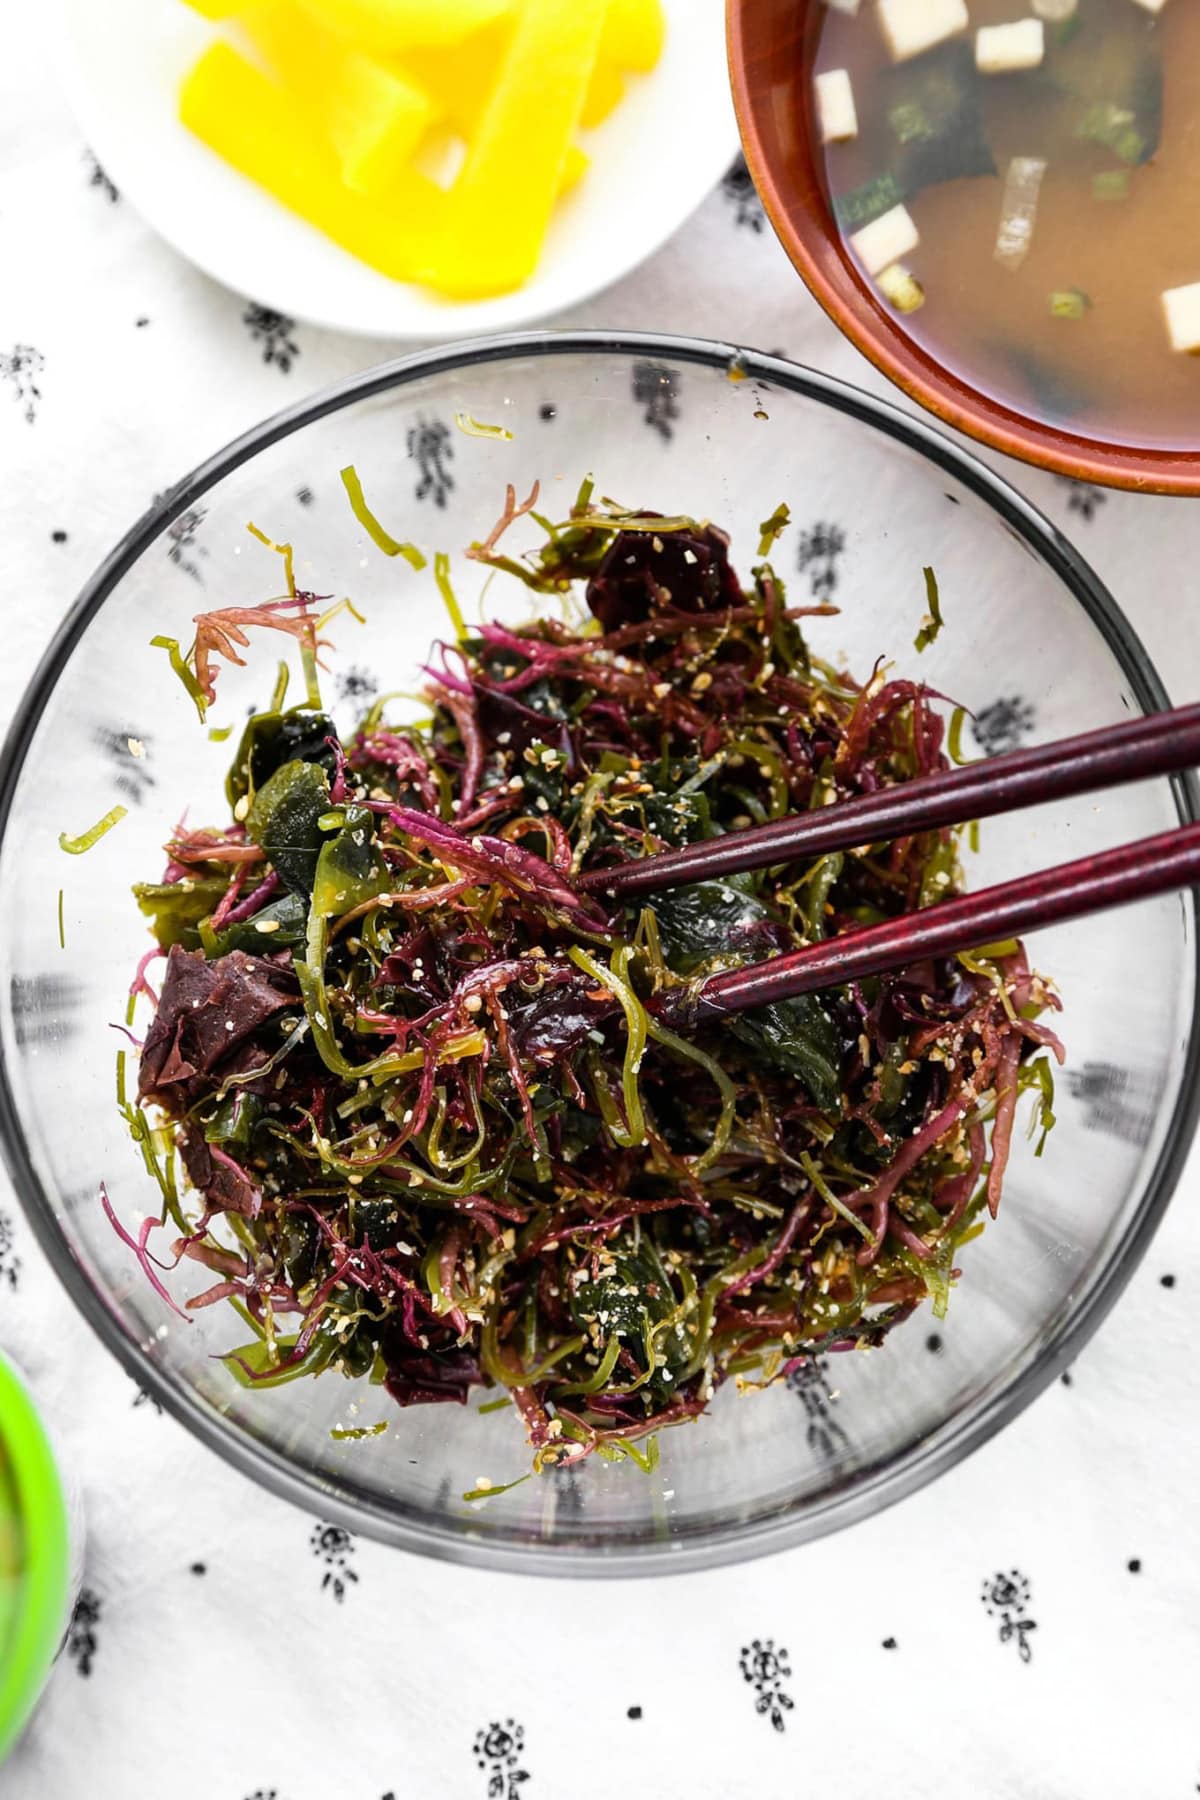 kaisou salada - seaweed salad